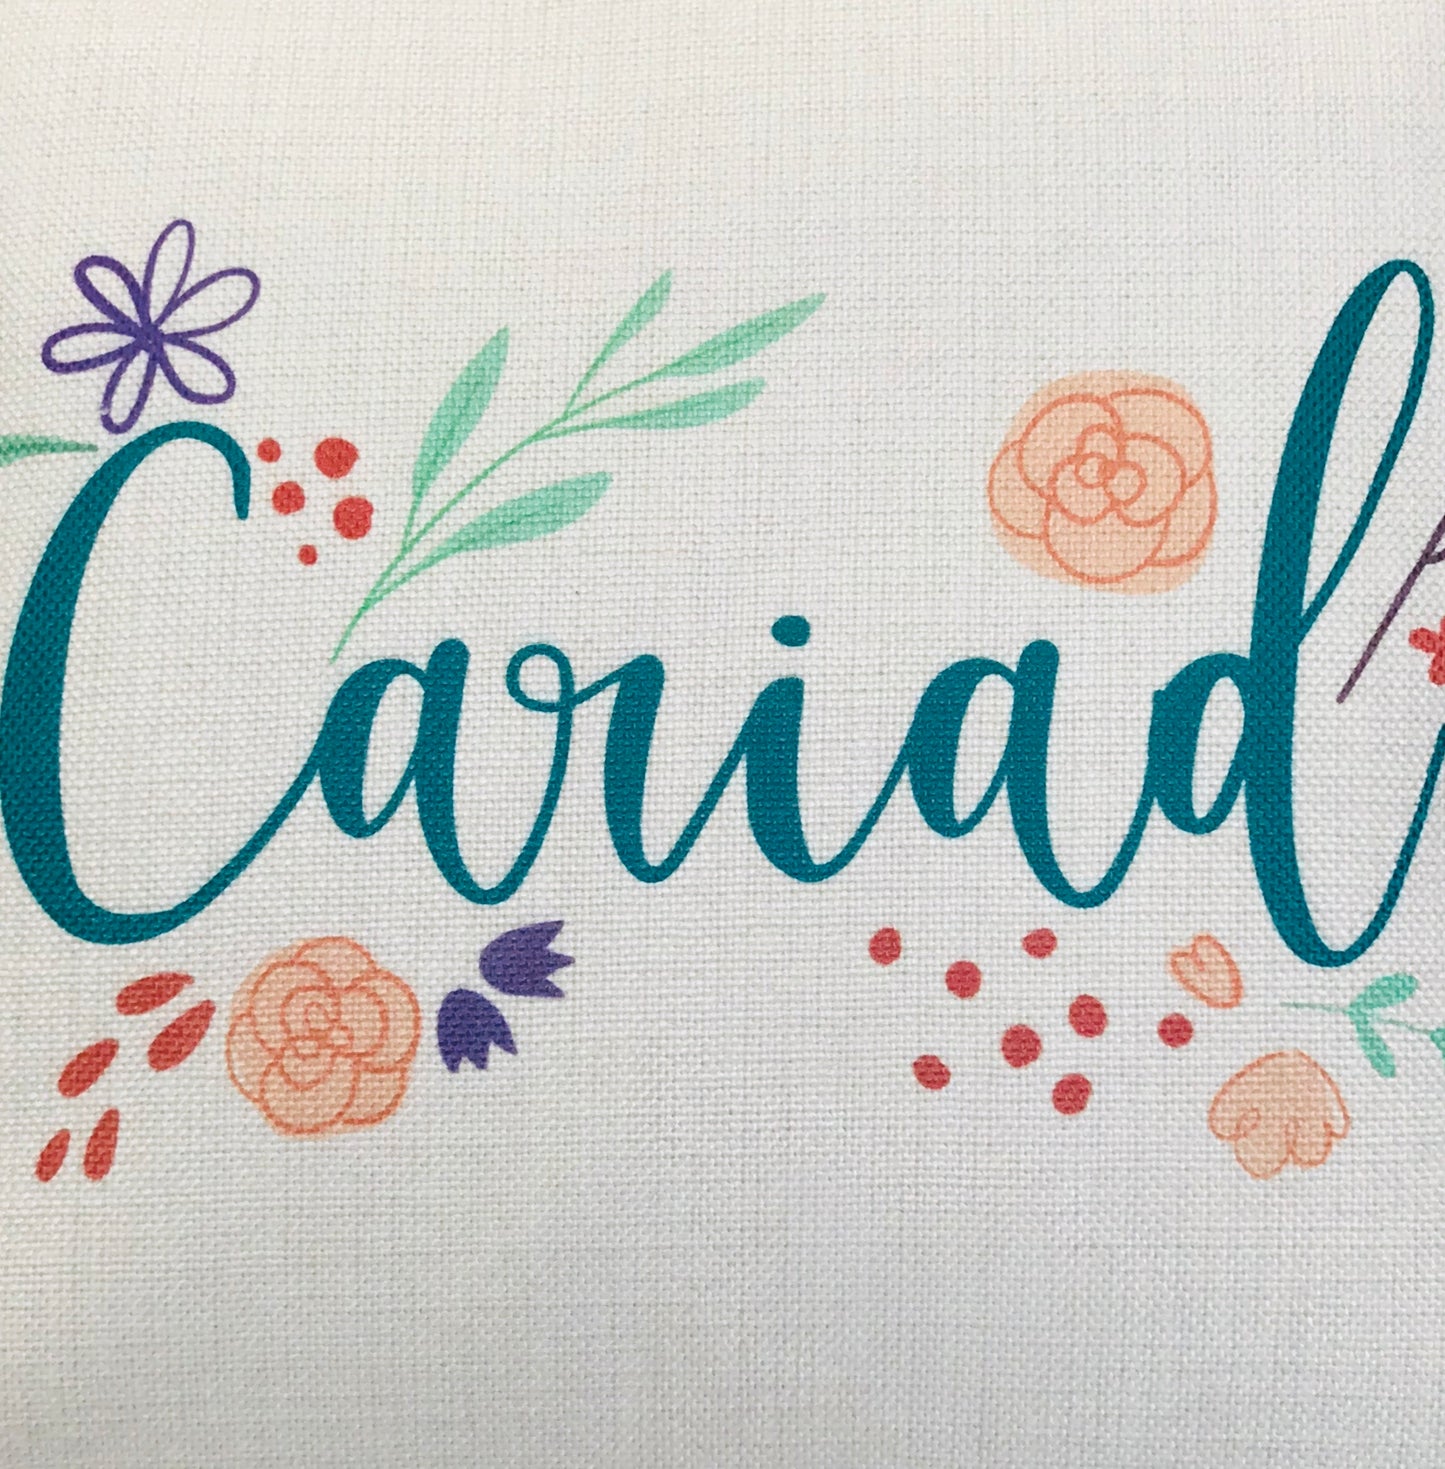 Cariad Floral Cushion